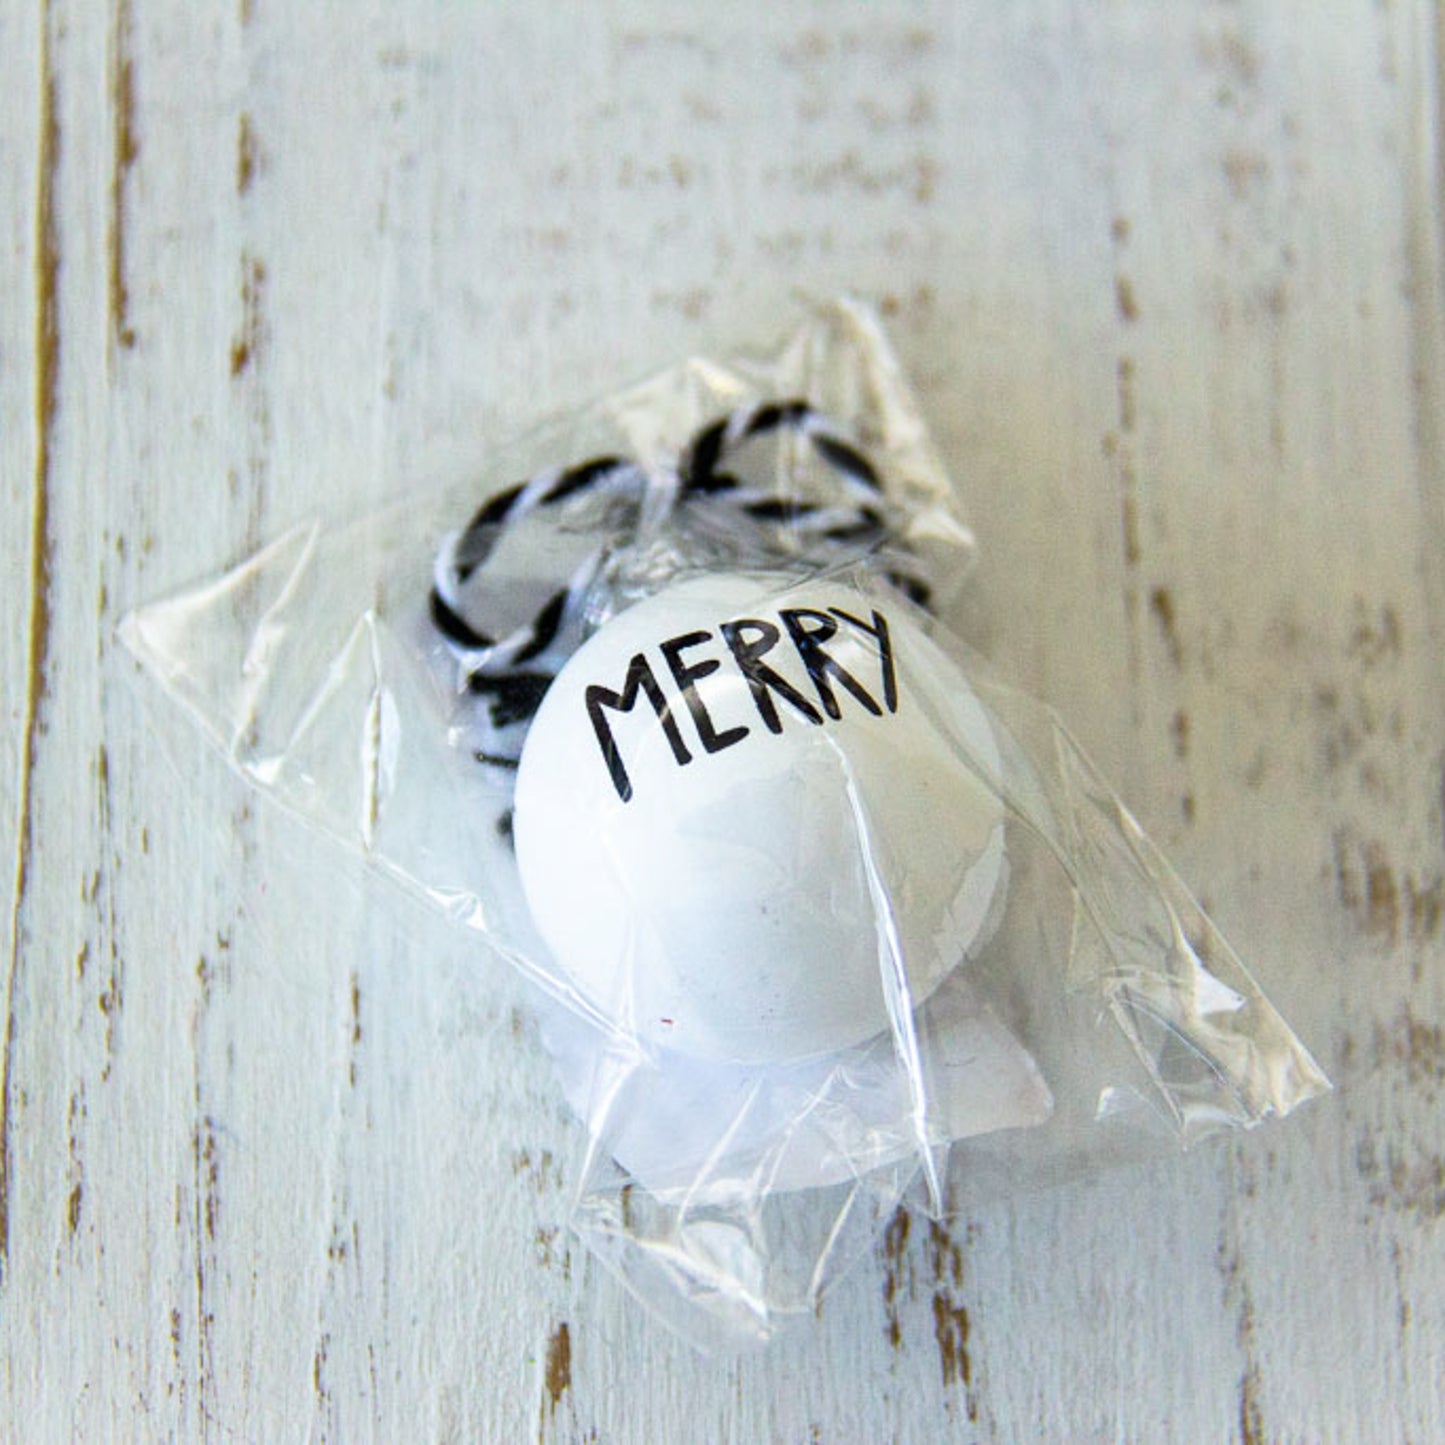 Mini Ornament - Gift Embellishment